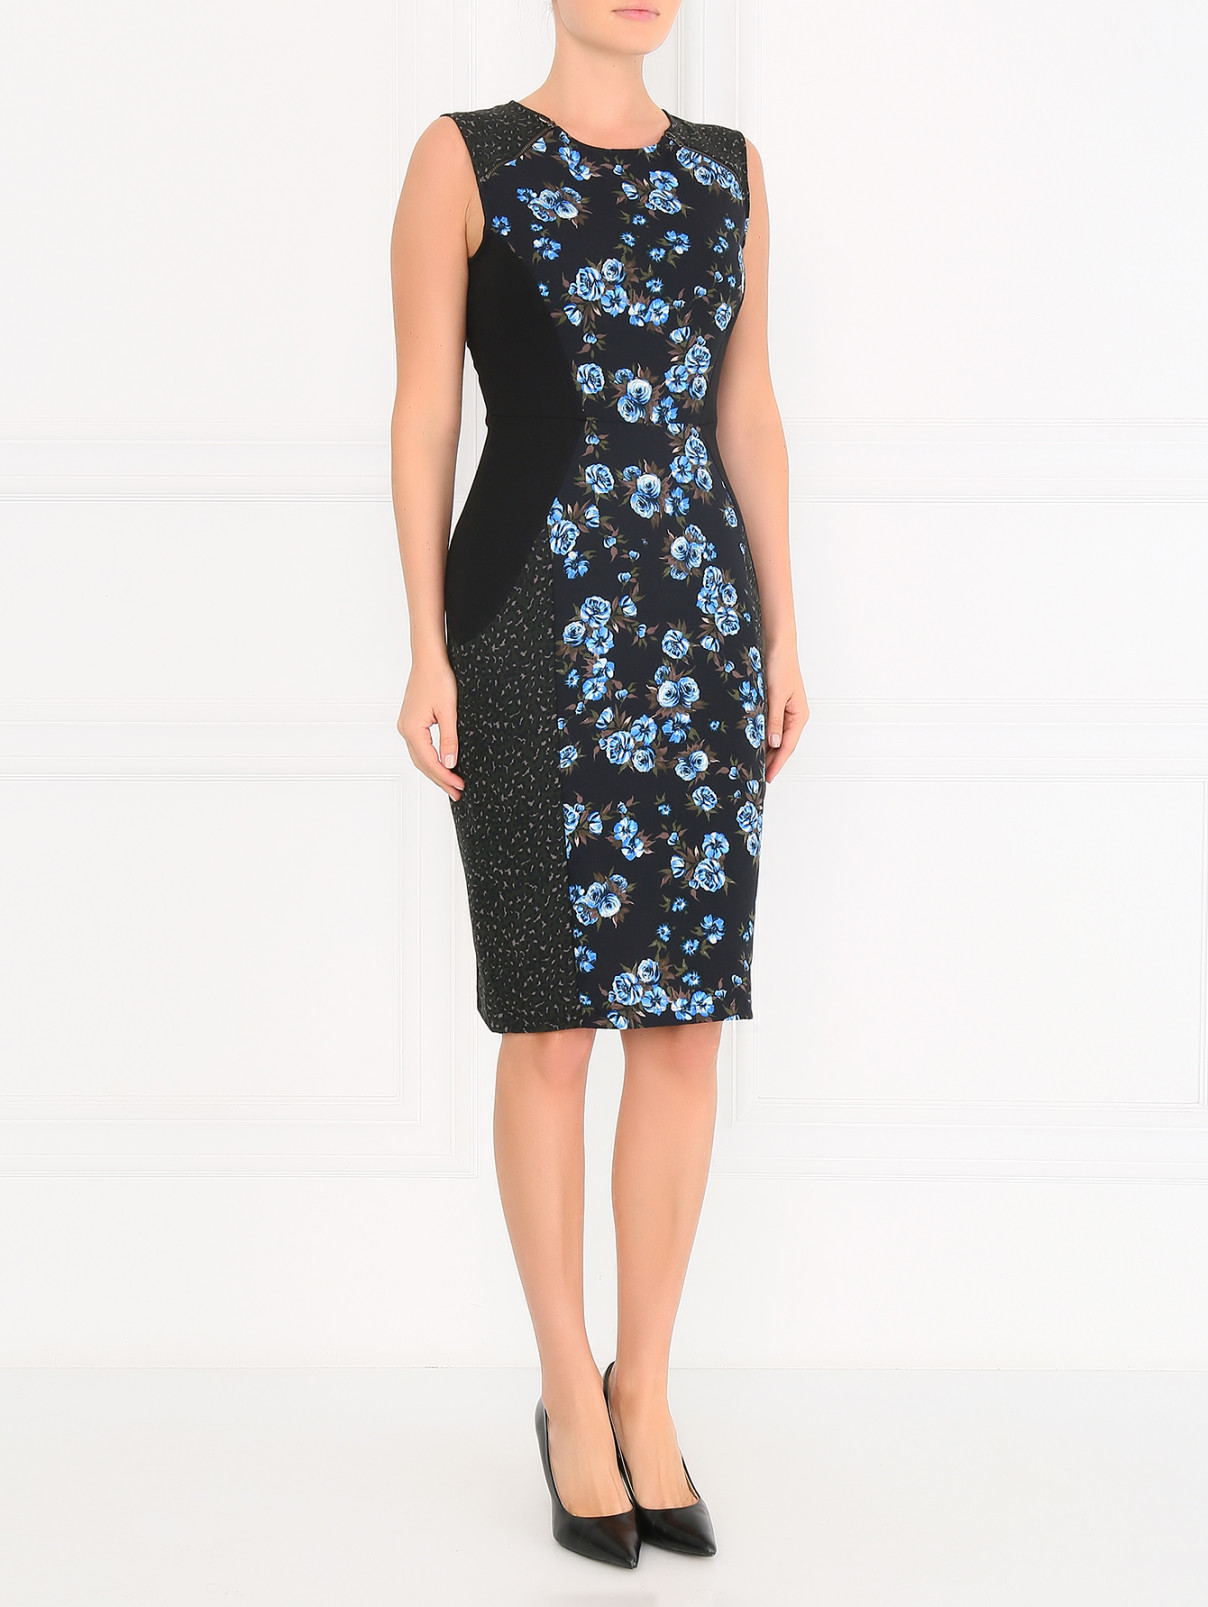 Платье-футляр с узором "цветы" Spx Code  –  Модель Общий вид  – Цвет:  Черный